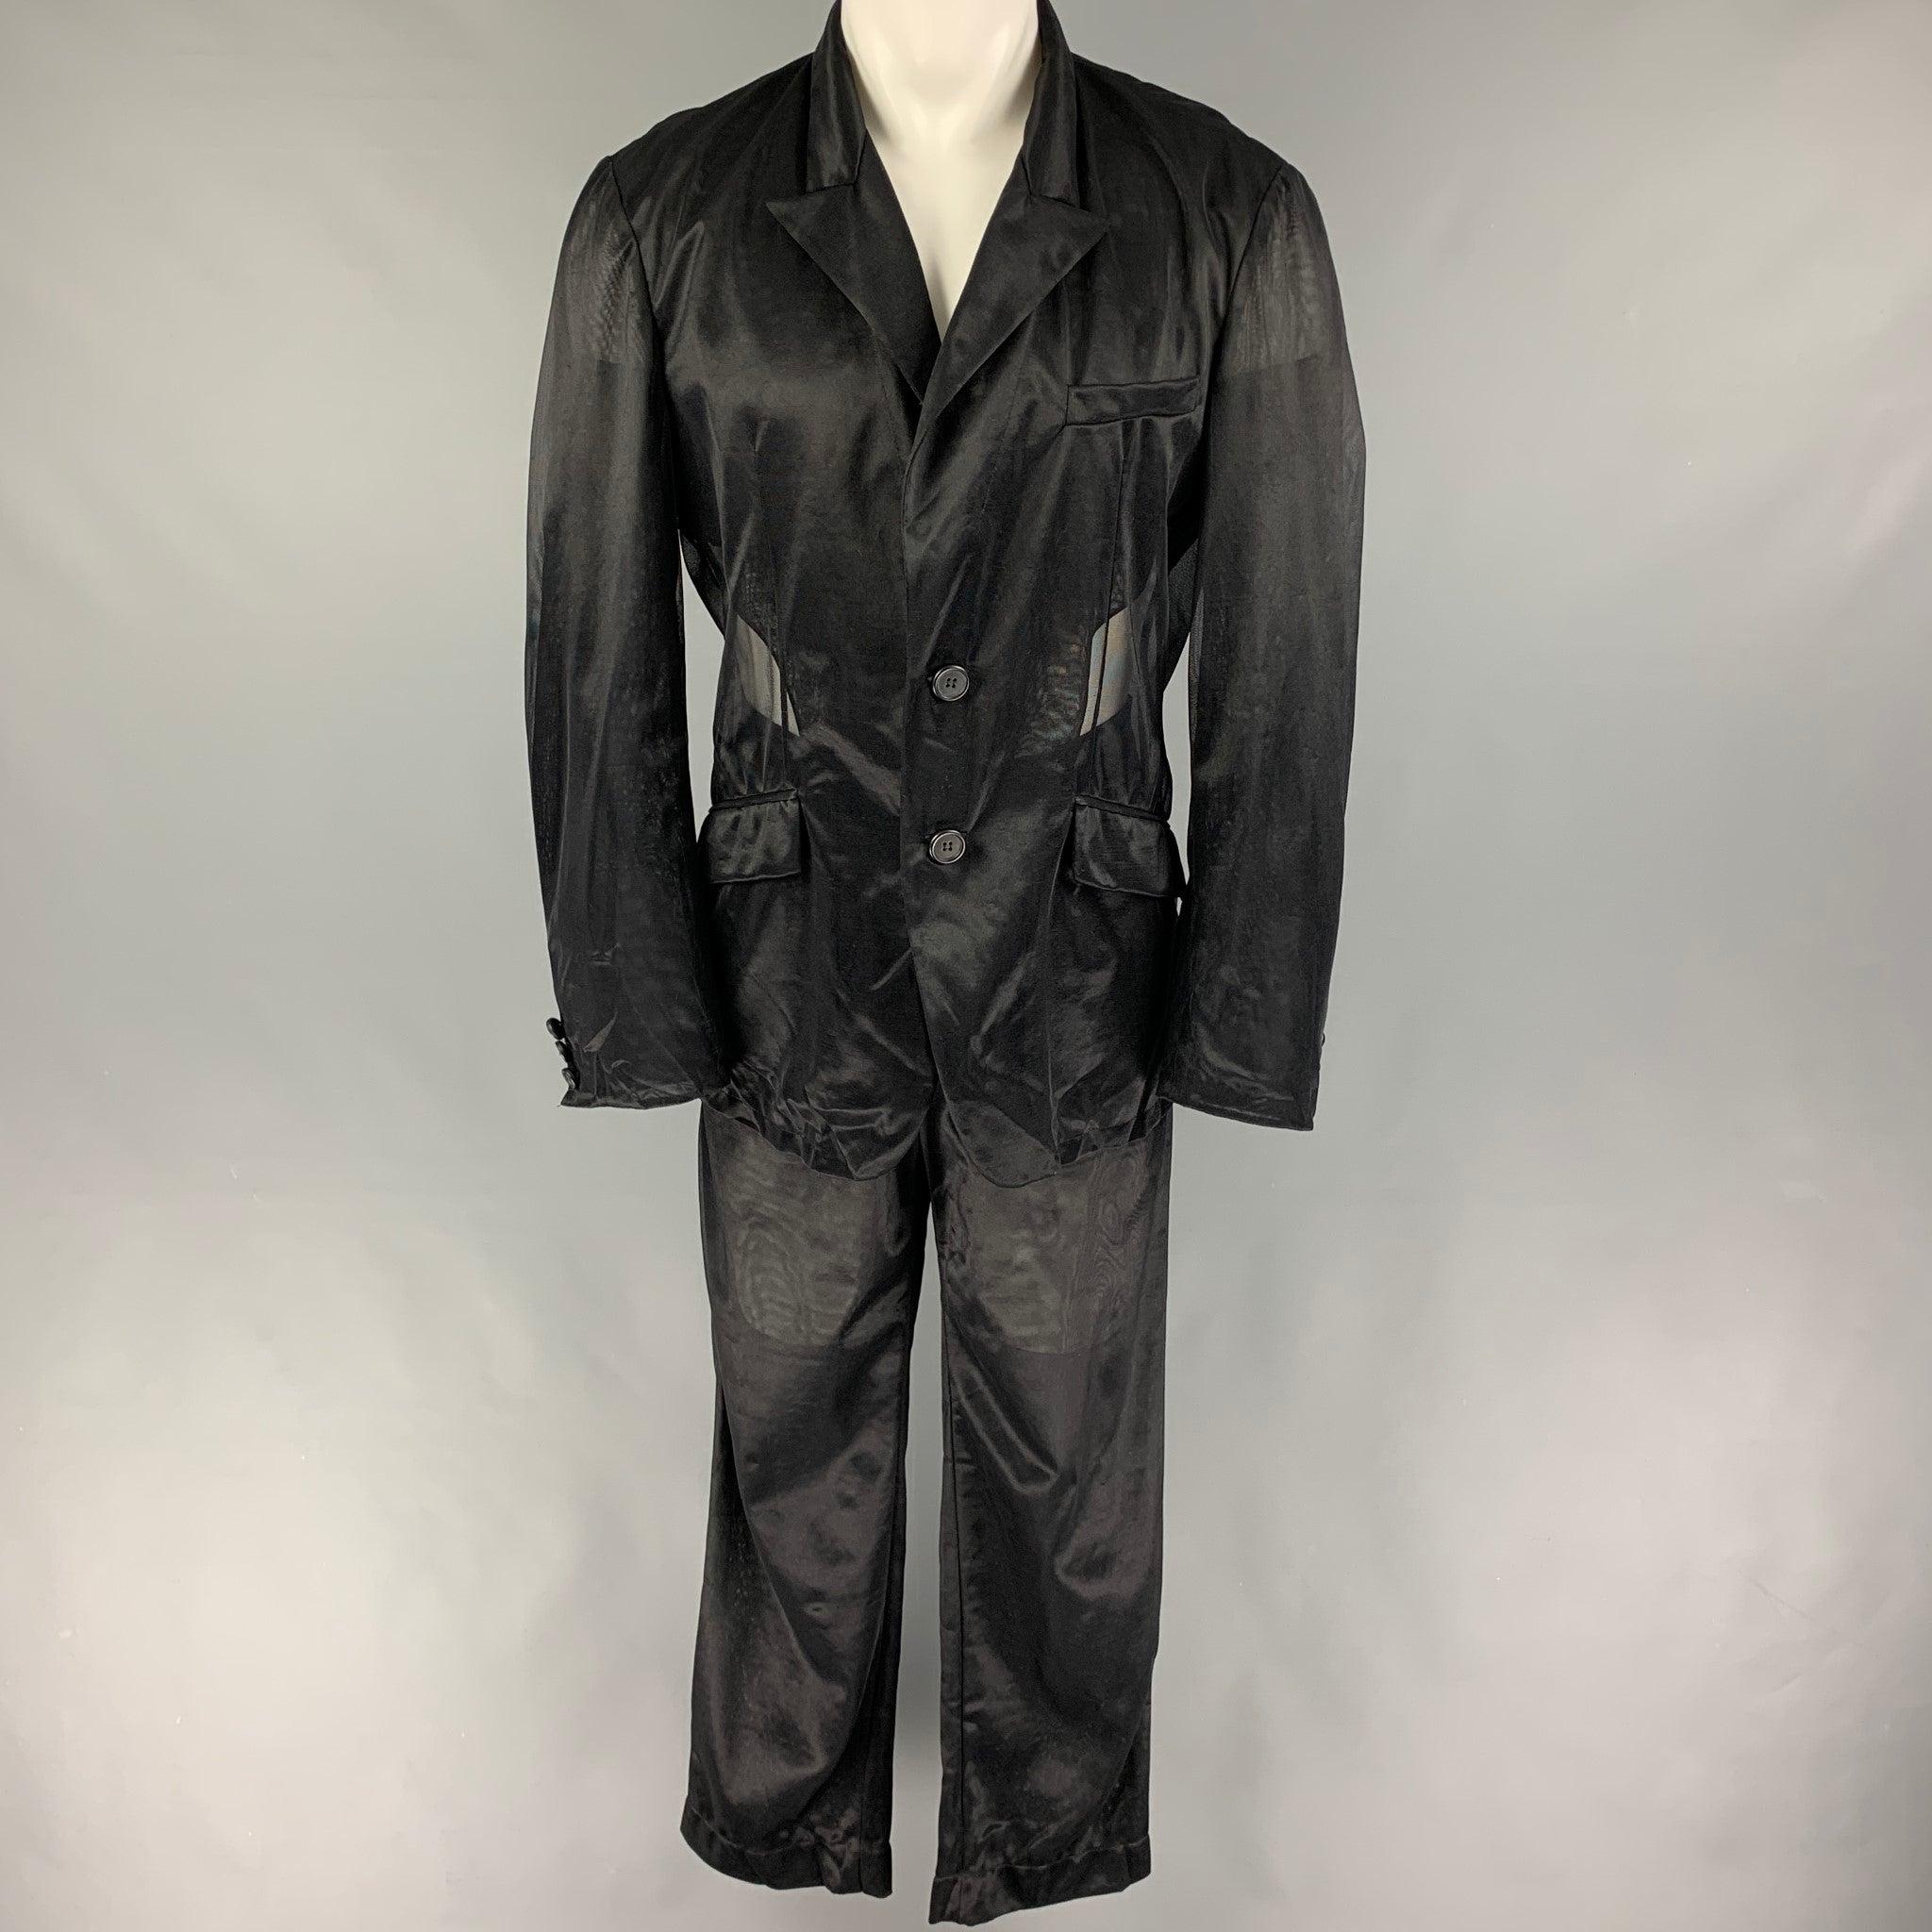 By Vintage DOLCE & GABBANA
Le costume est en polyamide noir transparent et comprend un manteau de sport à double boutonnage avec un revers en pointe et un pantalon assorti à devant plat. Fabriquées en Italie. Bon état d'origine. 

Marqué :   52